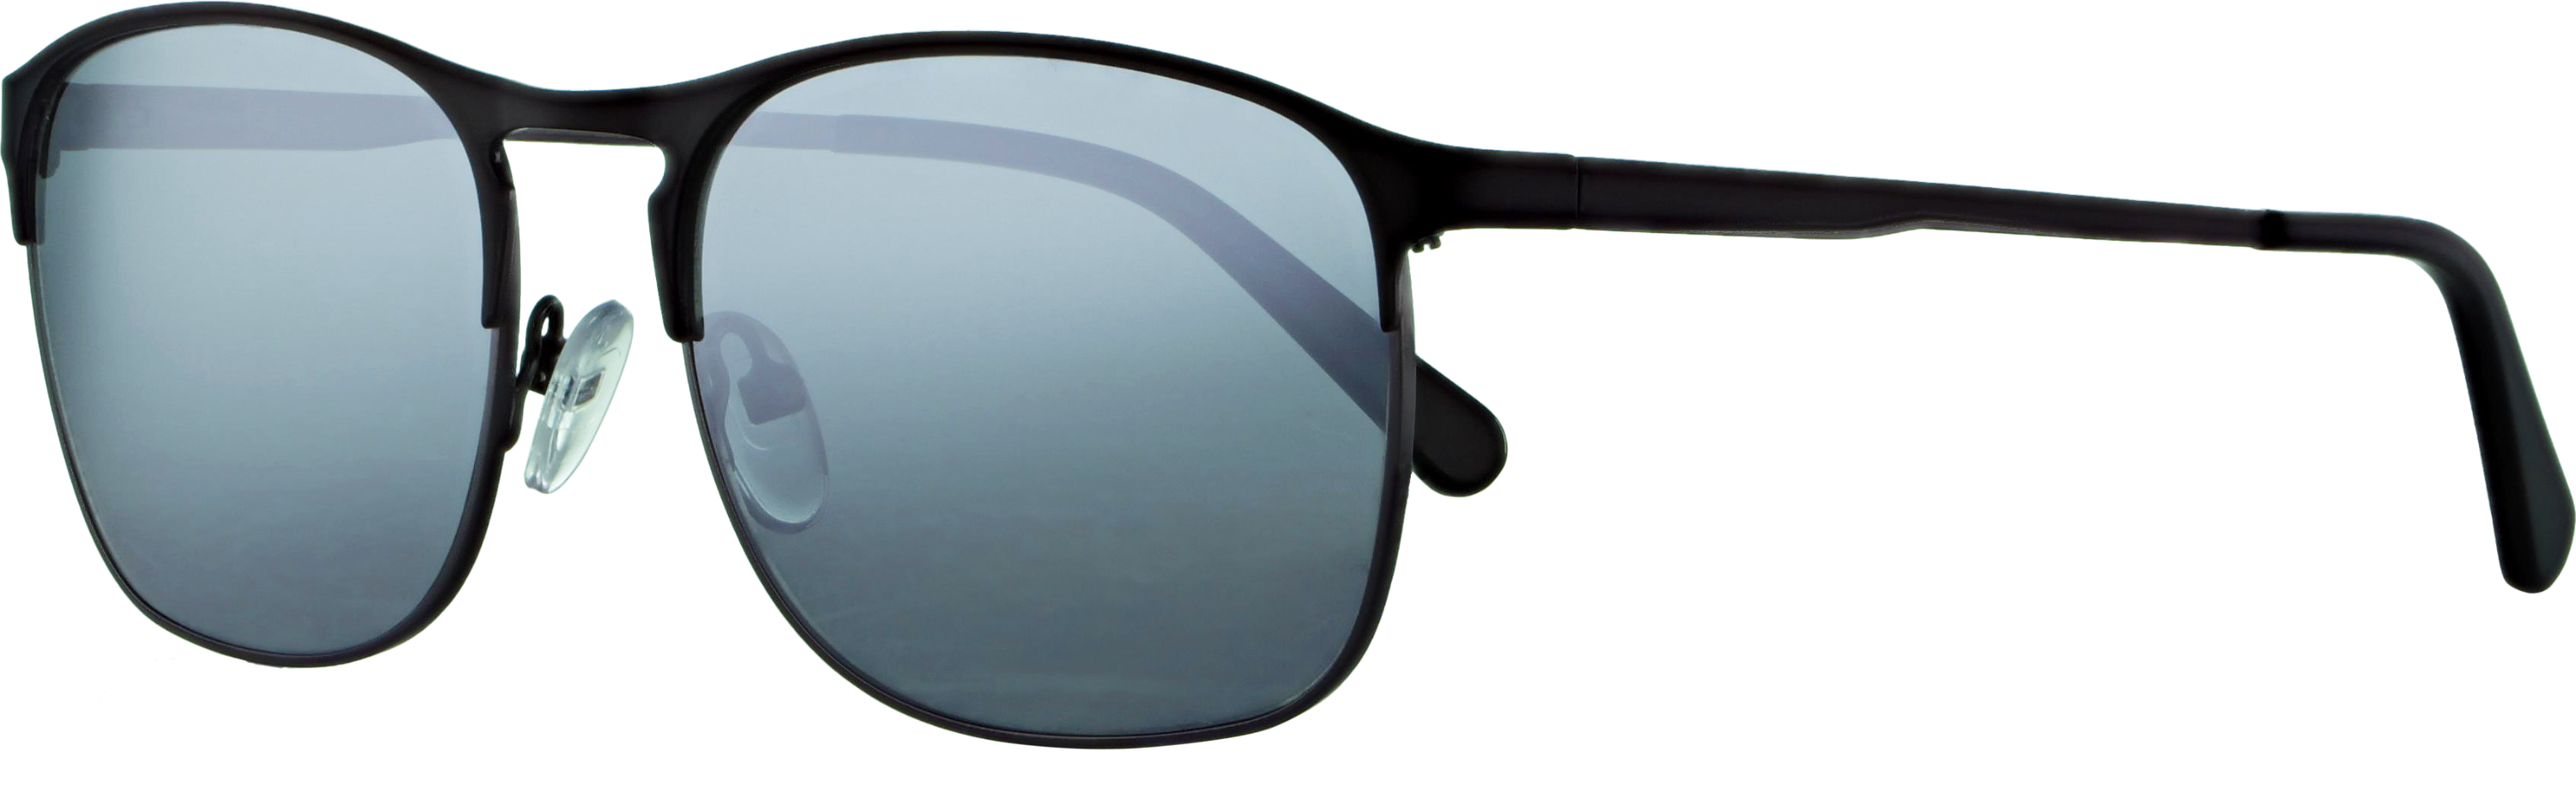 Das Bild zeigt die Sonnenbrille 719201 von der Marke Abele Optik in schwarz matt.